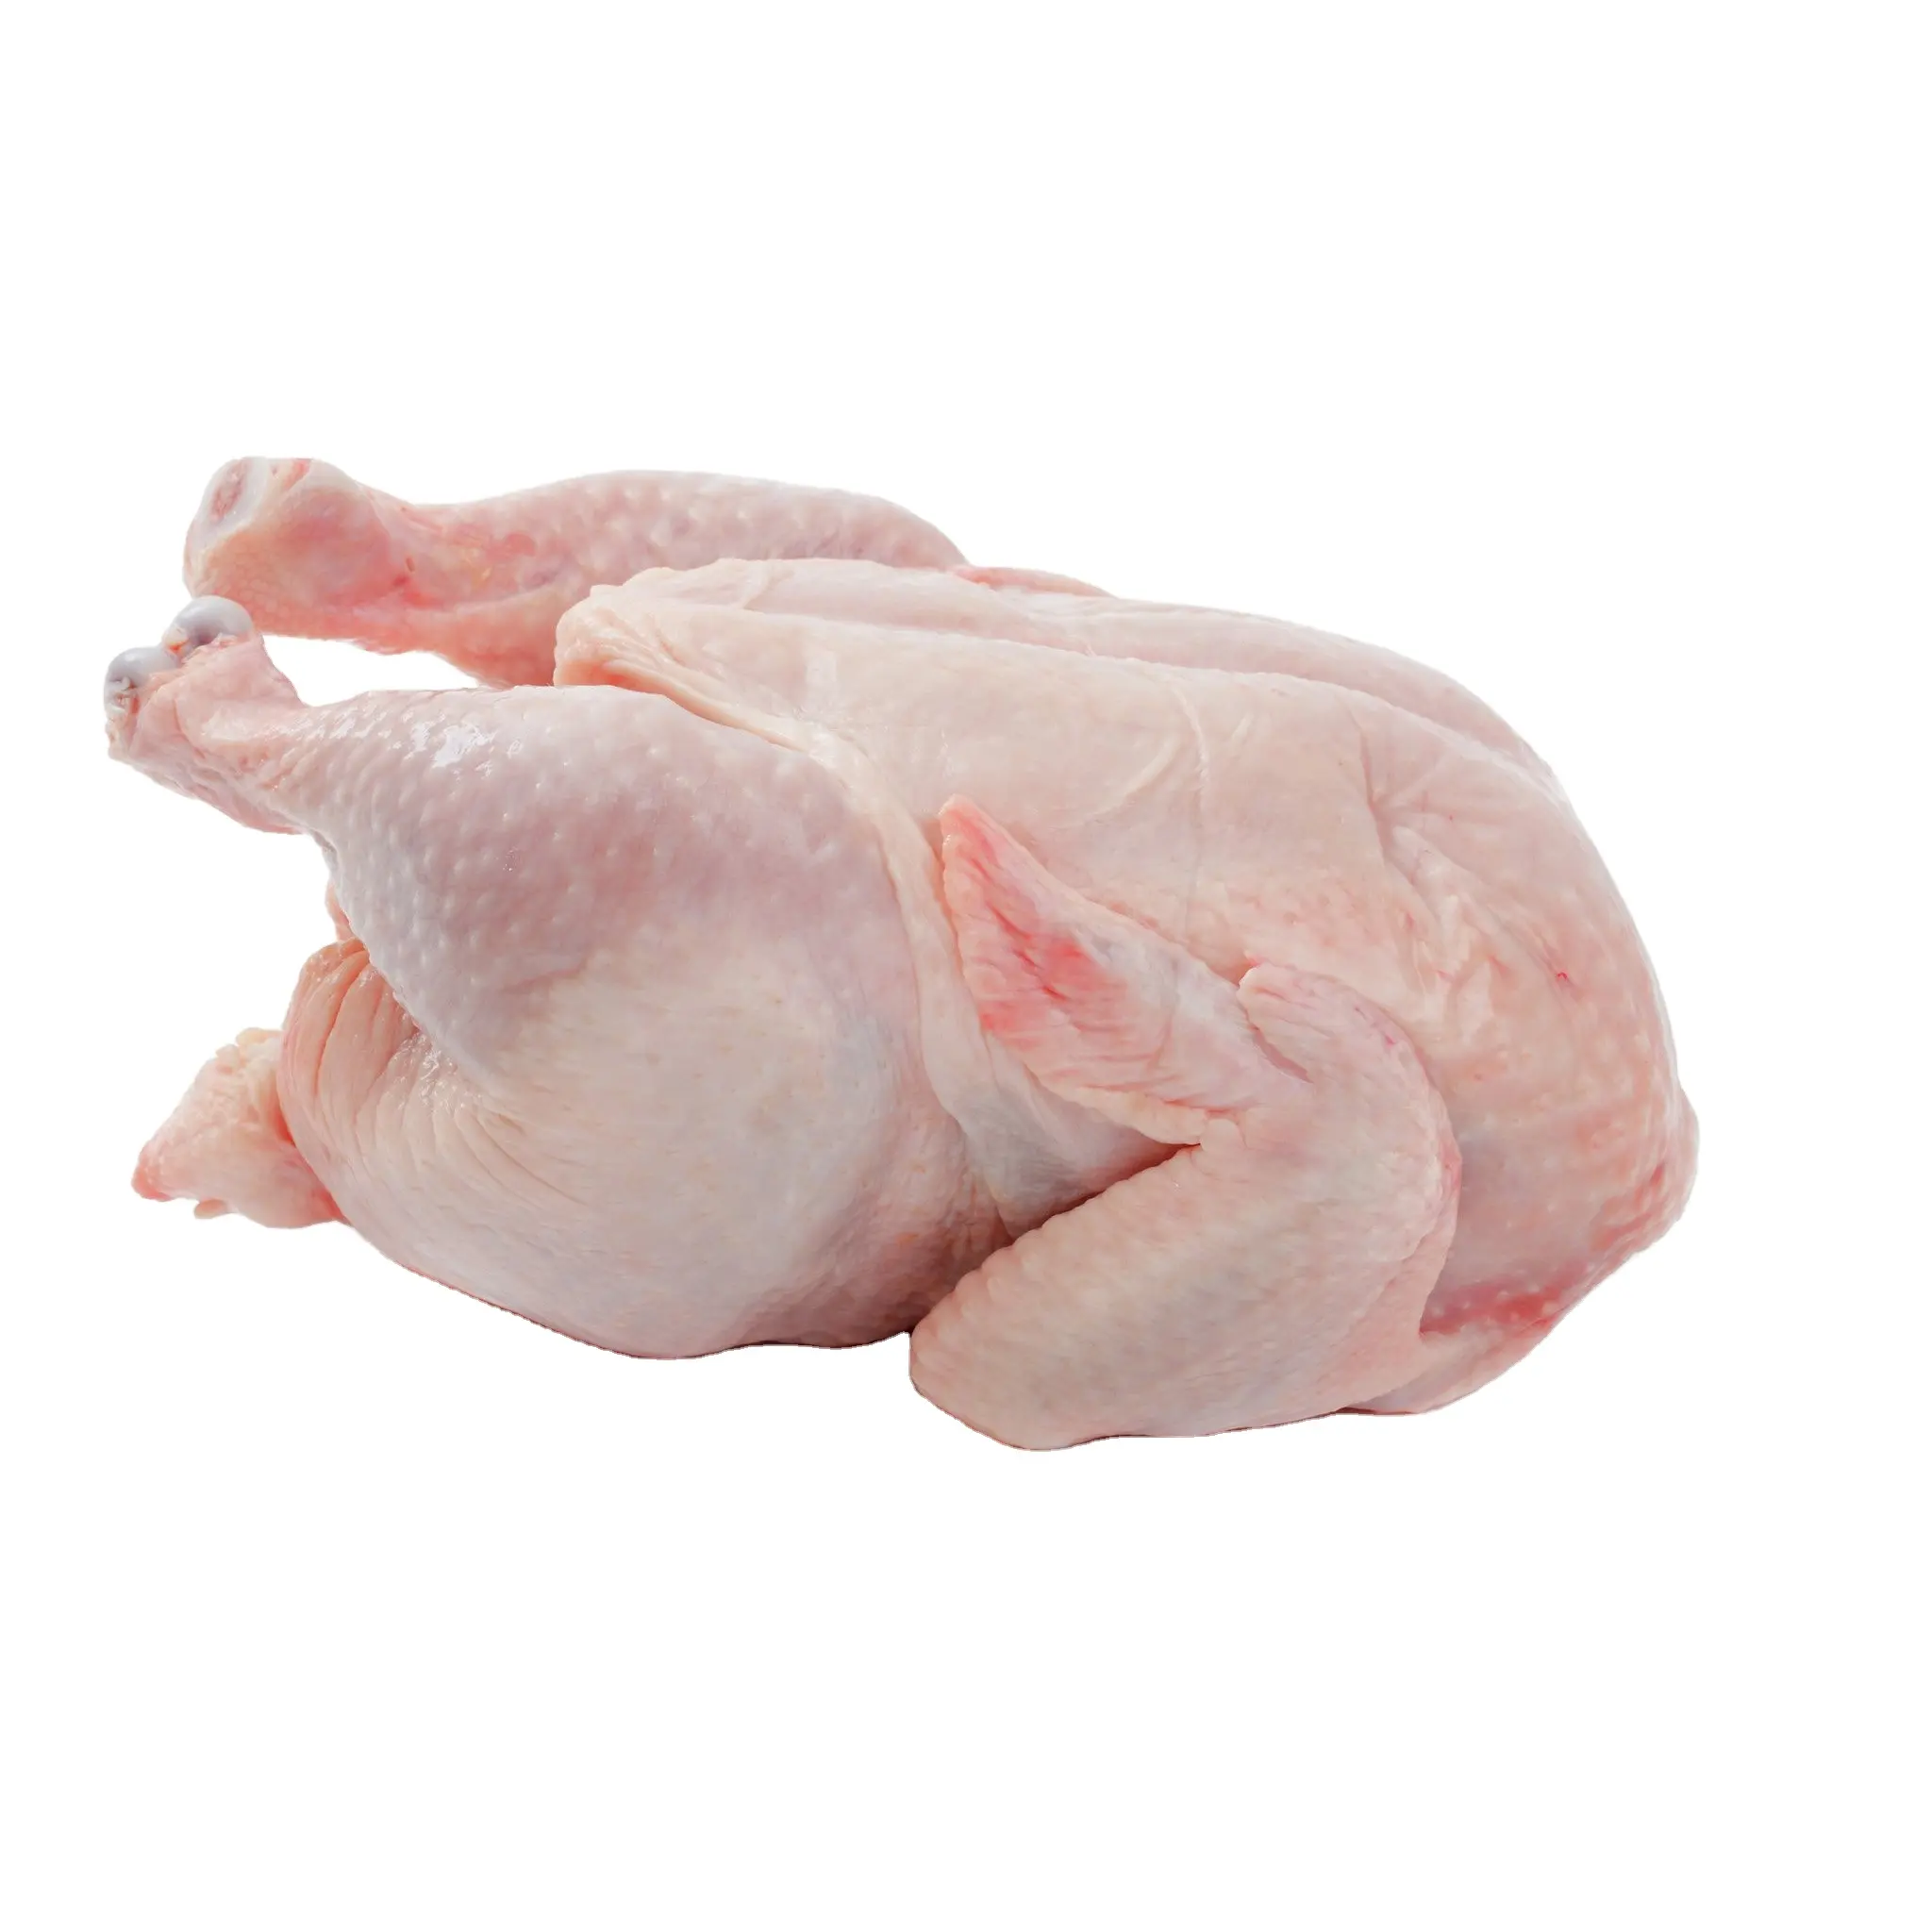 Großhandel Günstige Leg Quarter Frozen Chicken Zum Verkauf Halal Frozen Leg Quarter Lieferanten in Europa